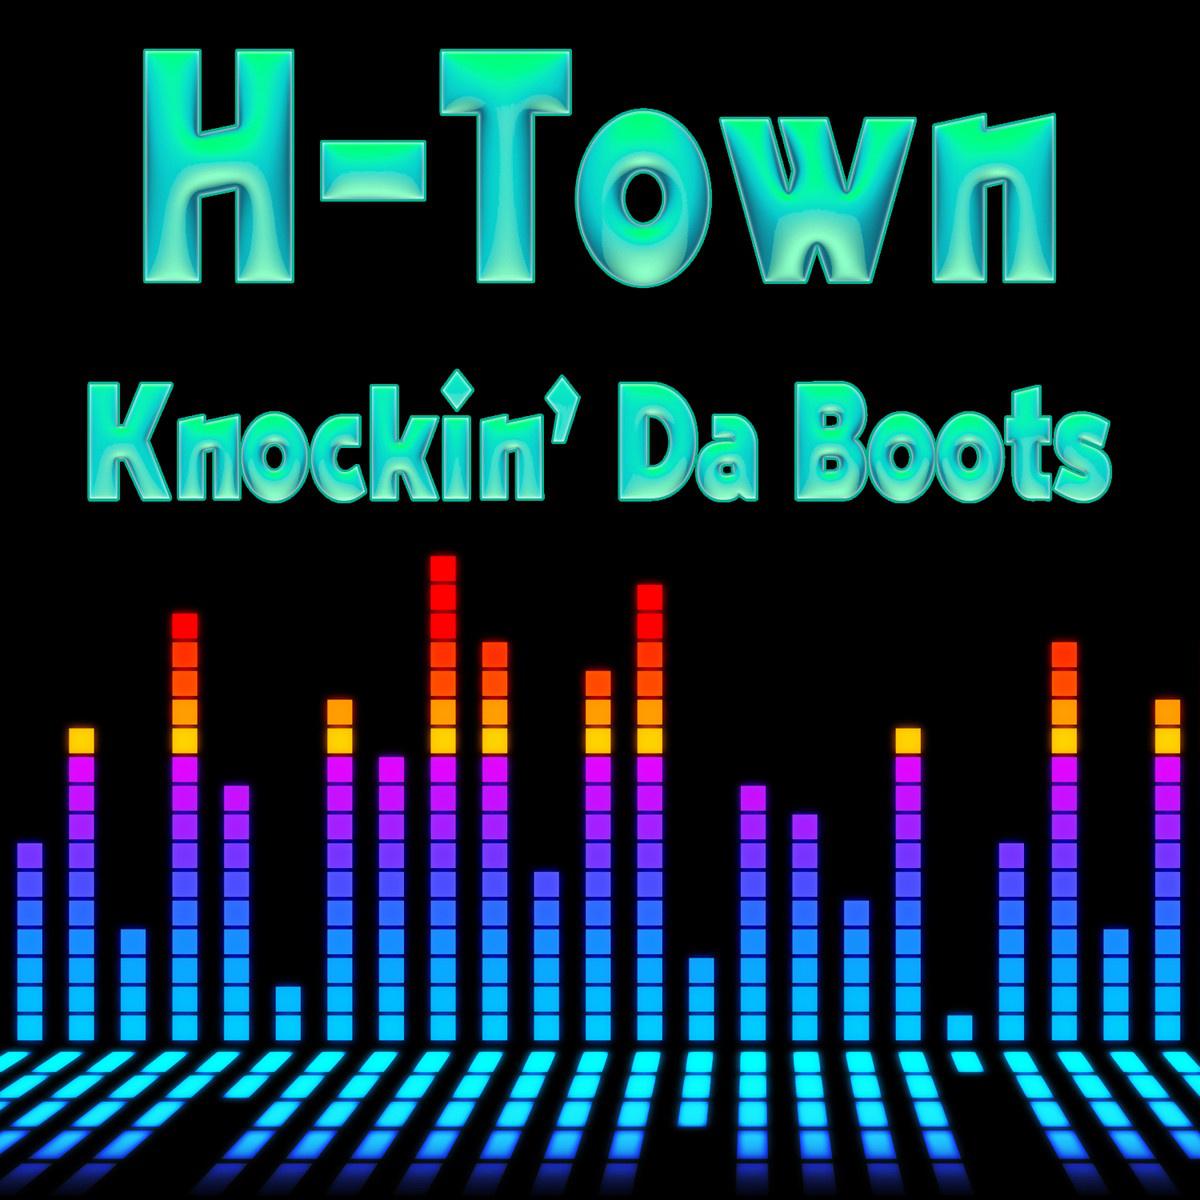 播 放 收 藏 分 享 下 载. 歌 手. H-Town. 评 论. Knockin' Da Boots. 生 成 外 链 播 放 器. 所...